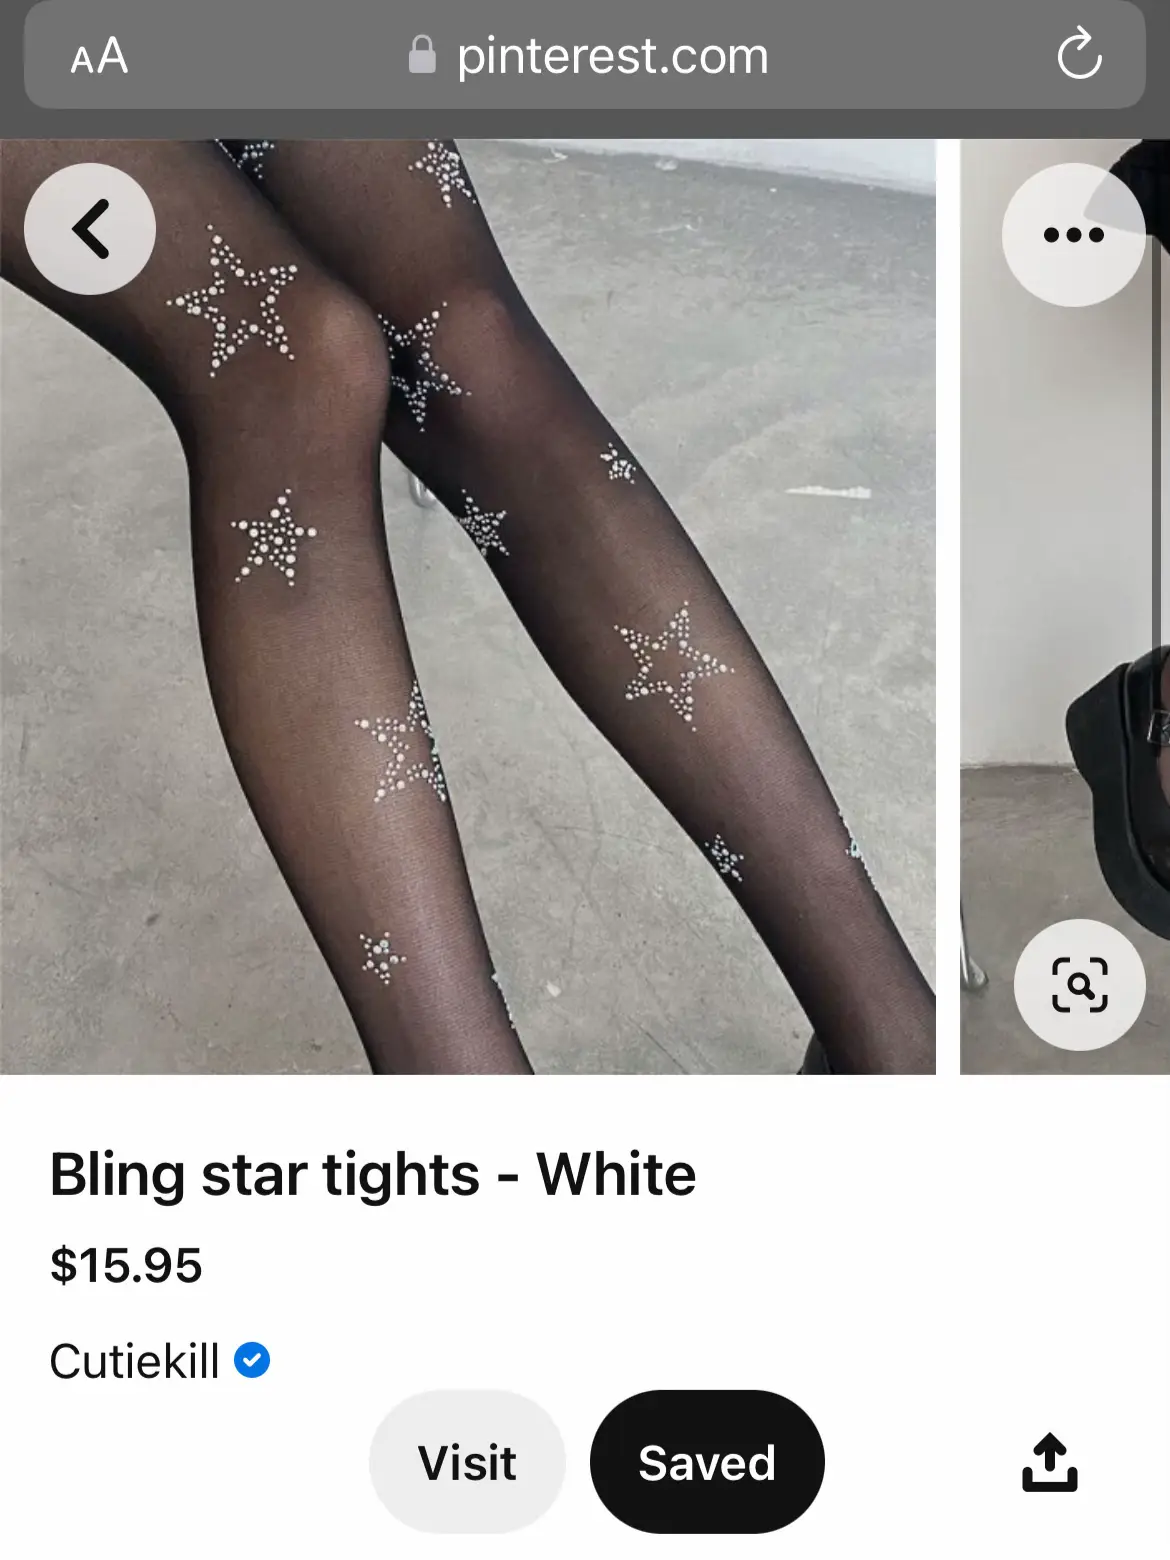 Bling star tights – Cutiekill